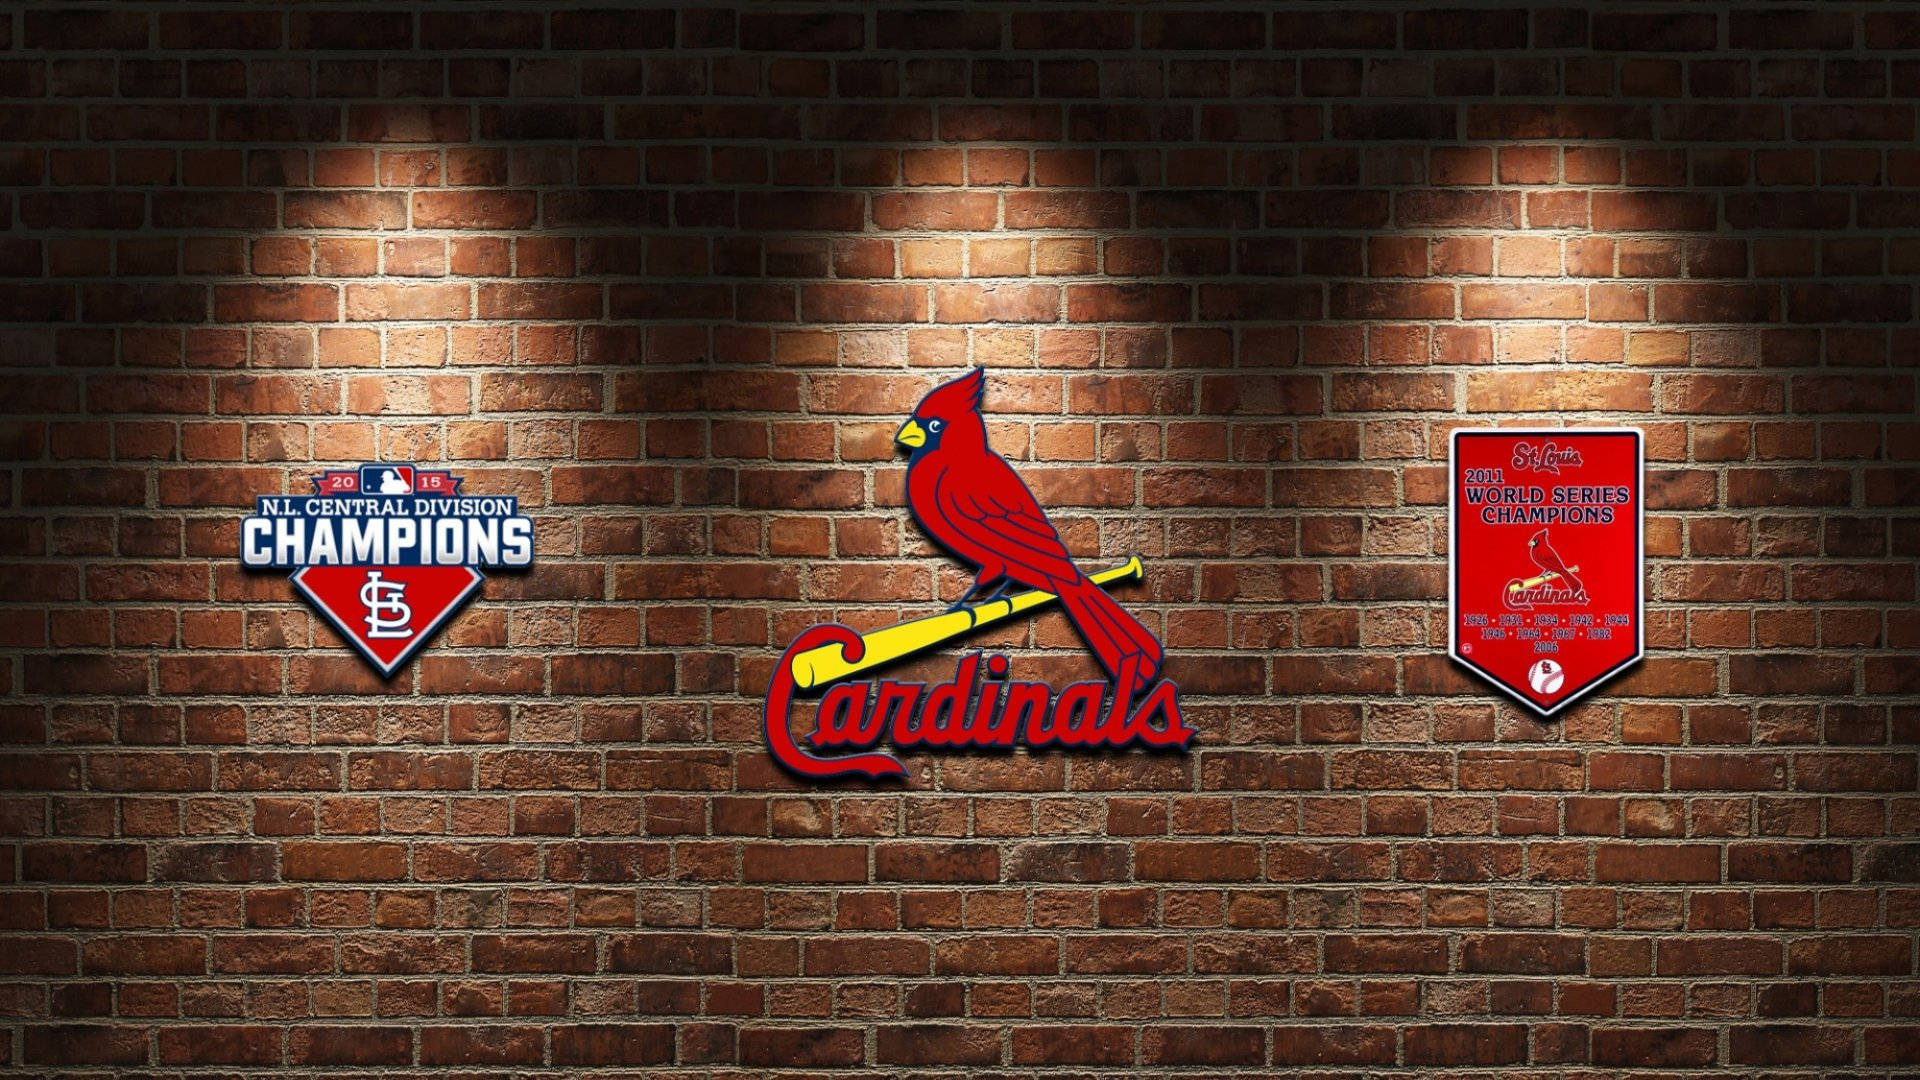 St Louis Cardinals Symbols And Awards